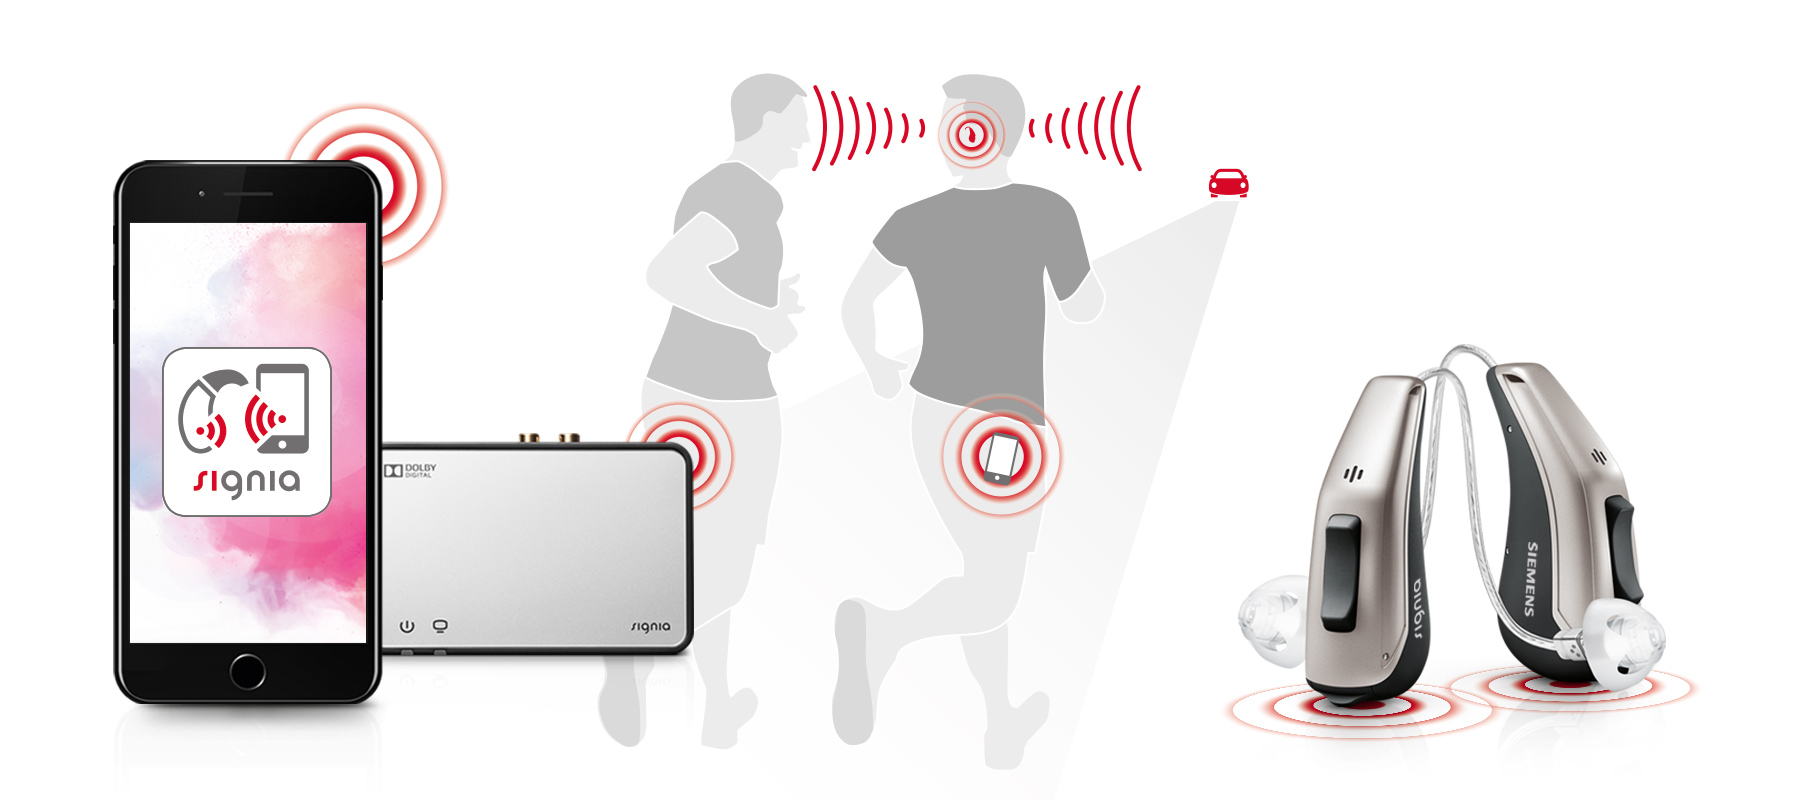 西嘉传奇号·飘13 BT兼容掌控App，提供了优于正常听力的聆听水平*，专为佩戴者的个性化生活而定制。此App不仅支持直接传输，同时，当佩戴者在移动过程中时，可发送信息至助听器，为他带来最佳的聆听——轻松、安全。